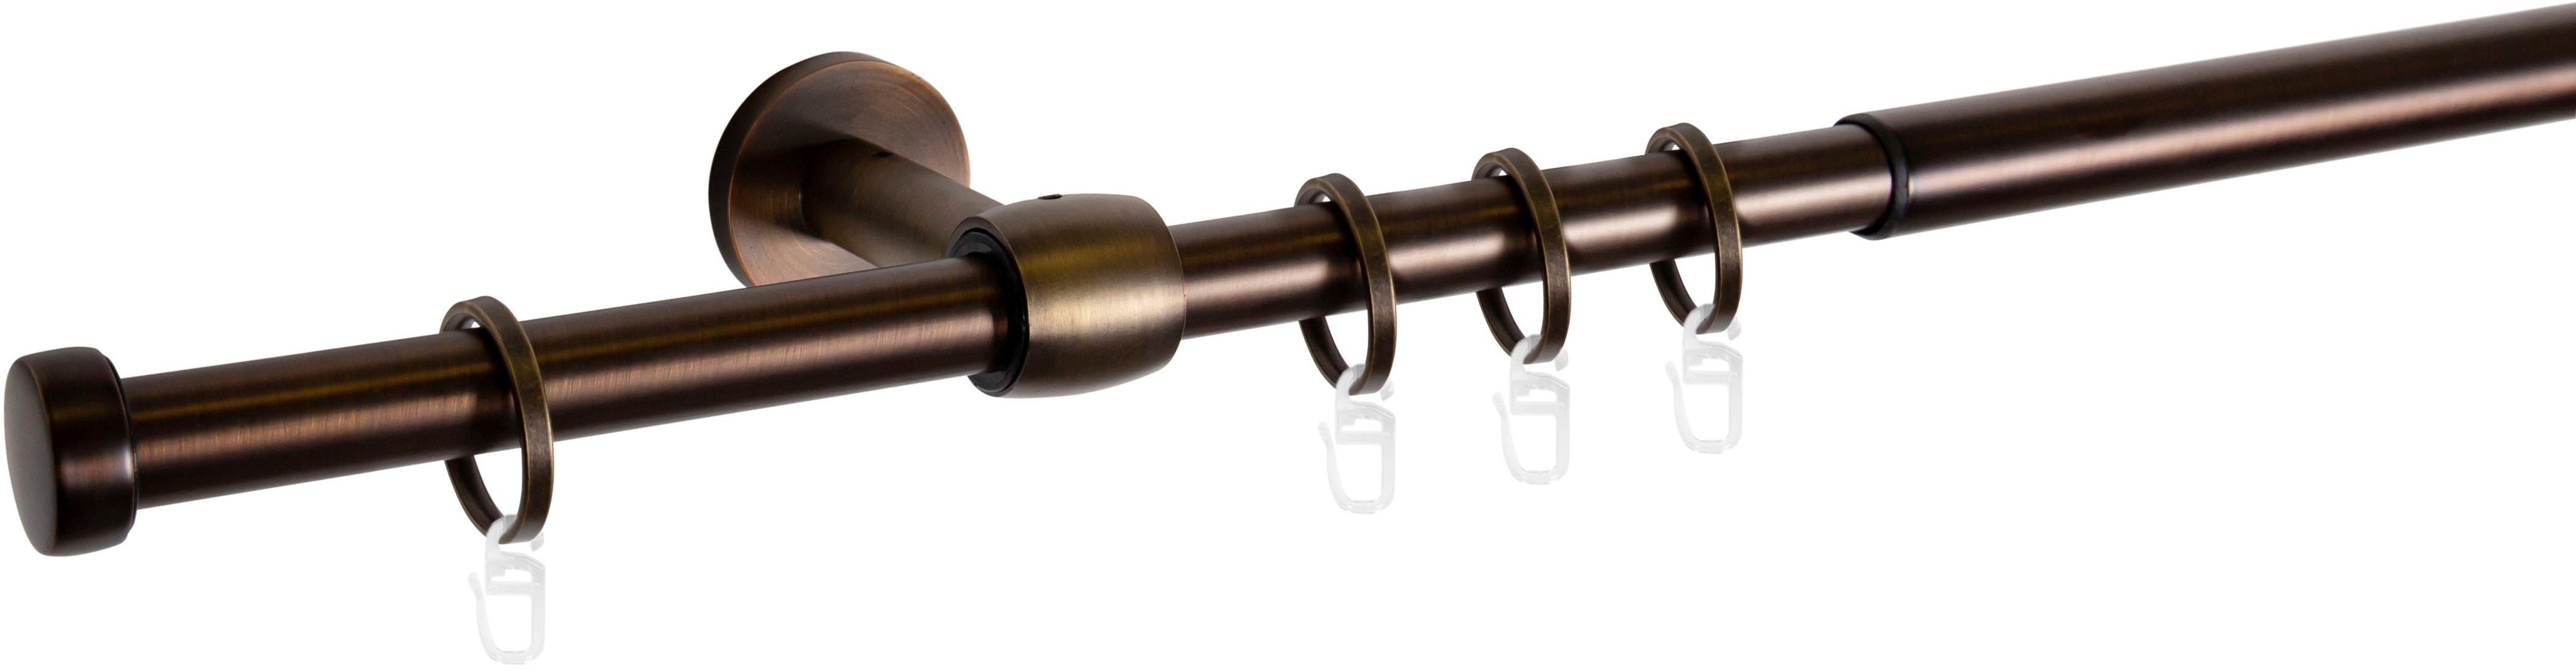 Gardinenstange Cap-Noble, mydeco, Ø 16 mm, 1-läufig, ausziehbar bronzefarben | Gardinenstangen